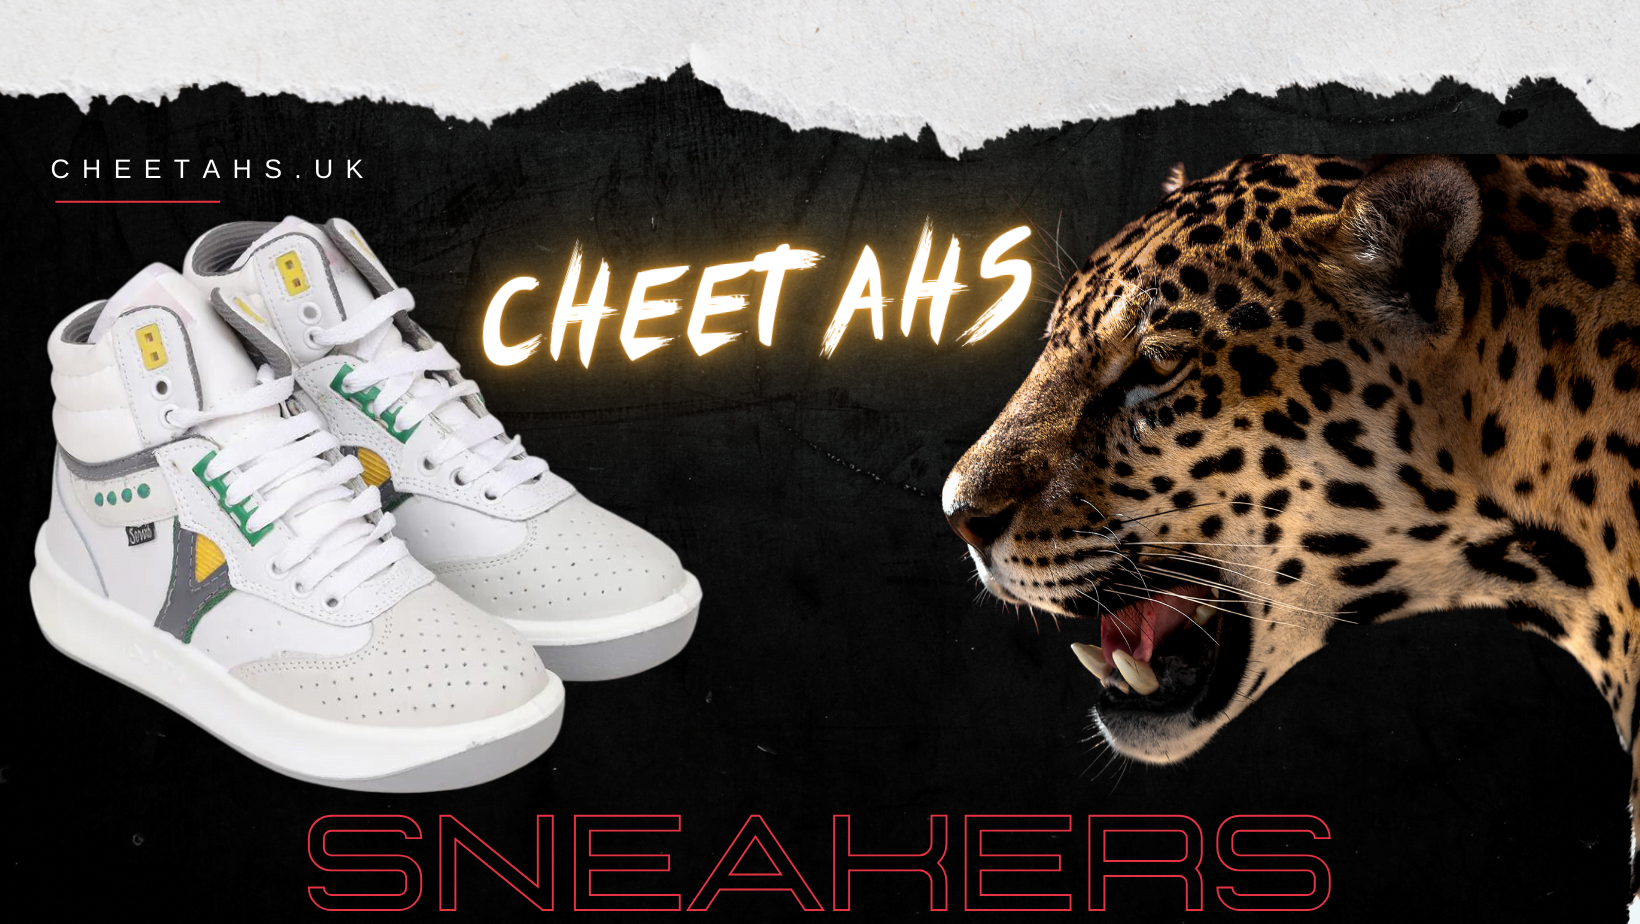 White Servis Cheetah High Top Sneakers - CHEETAHS